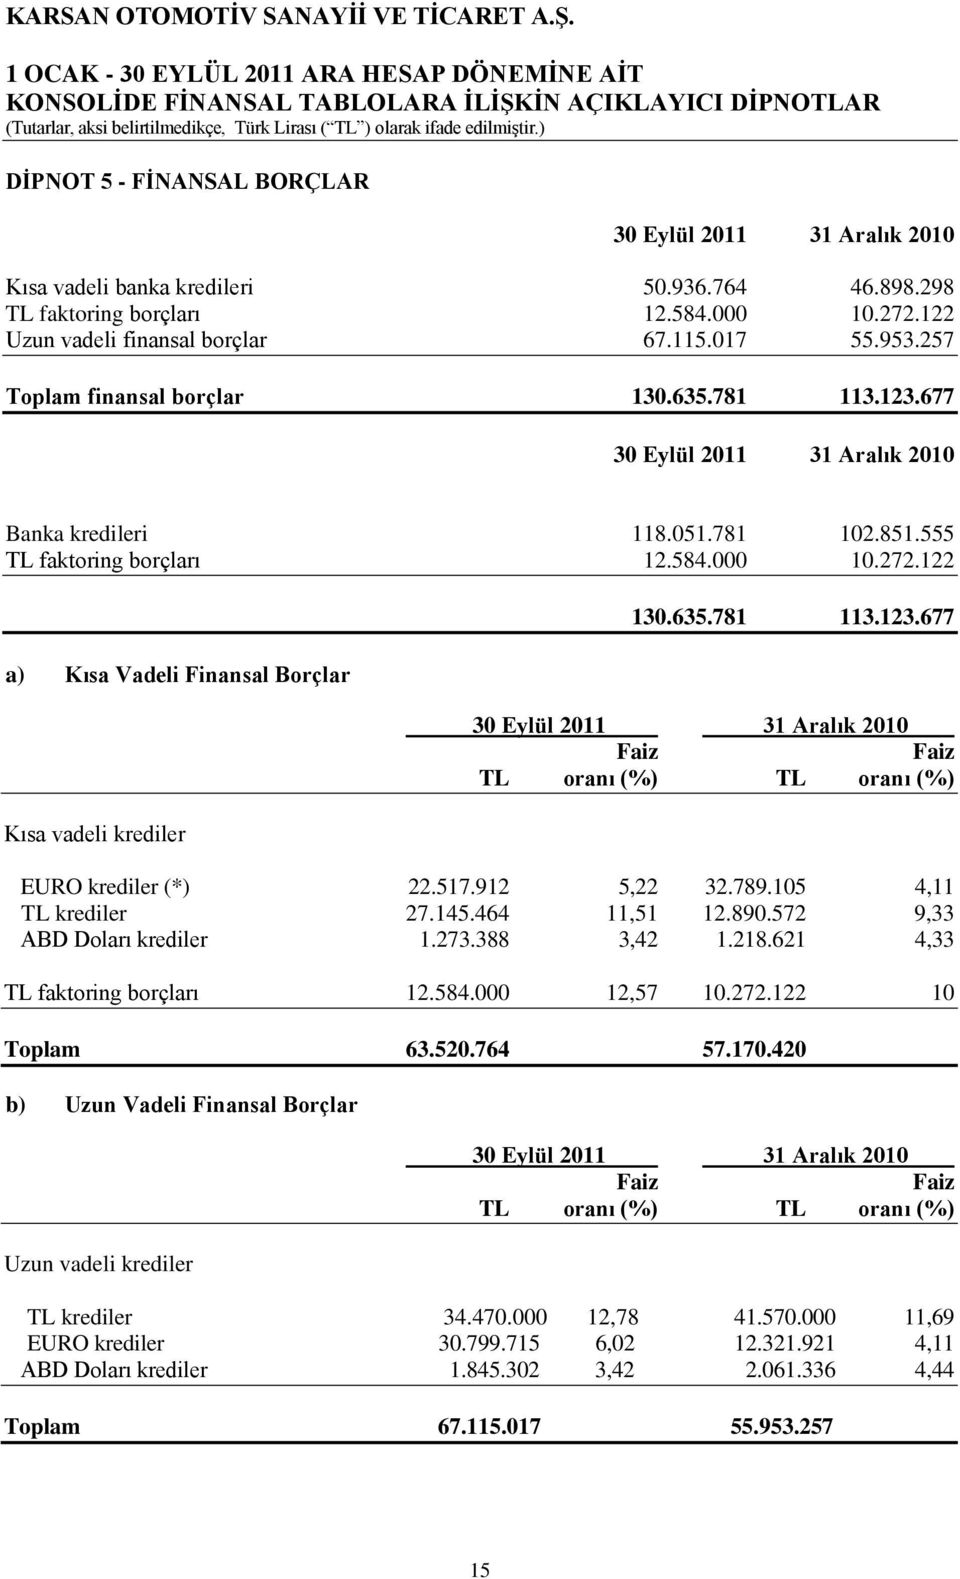 122 a) Kısa Vadeli Finansal Borçlar Kısa vadeli krediler 130.635.781 113.123.677 30 Eylül 2011 31 Aralık 2010 Faiz Faiz TL oranı (%) TL oranı (%) EURO krediler (*) 22.517.912 5,22 32.789.